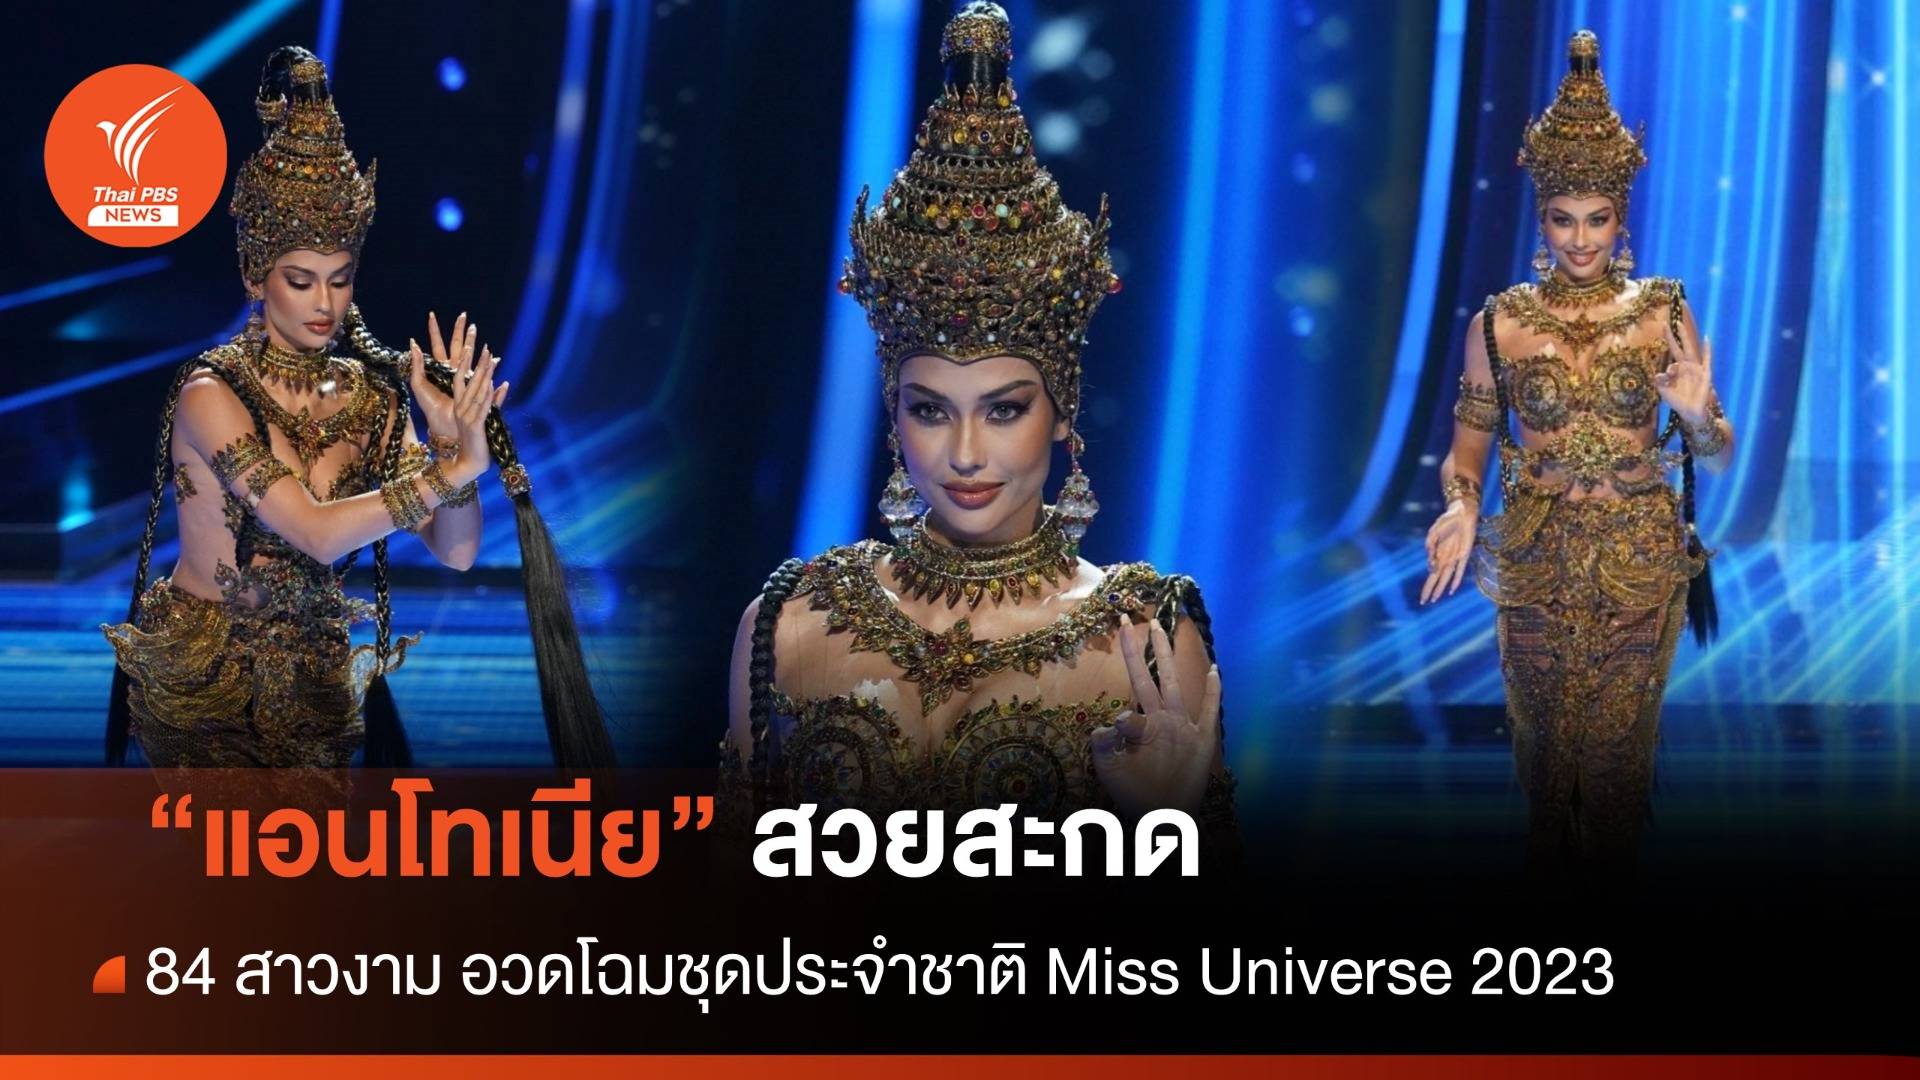 "แอนโทเนีย" สวยสะกด อวดโฉมชุดประจำชาติ เวที Miss Universe 2023 